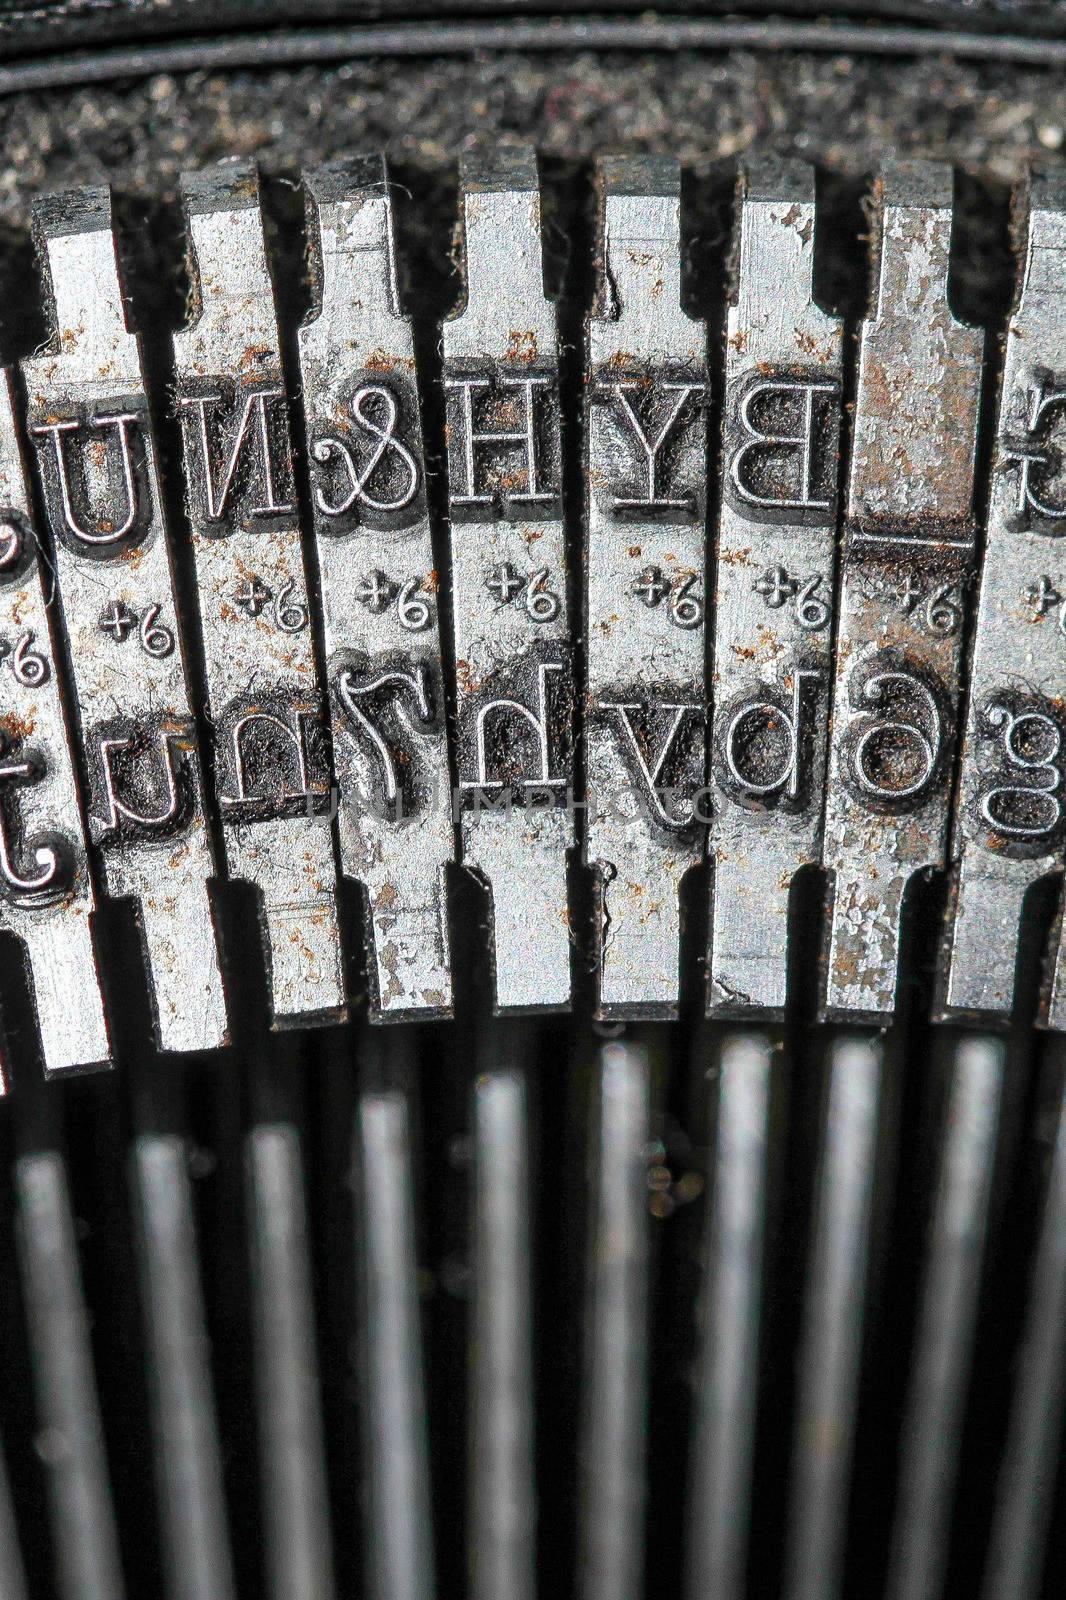 Typewriter detail